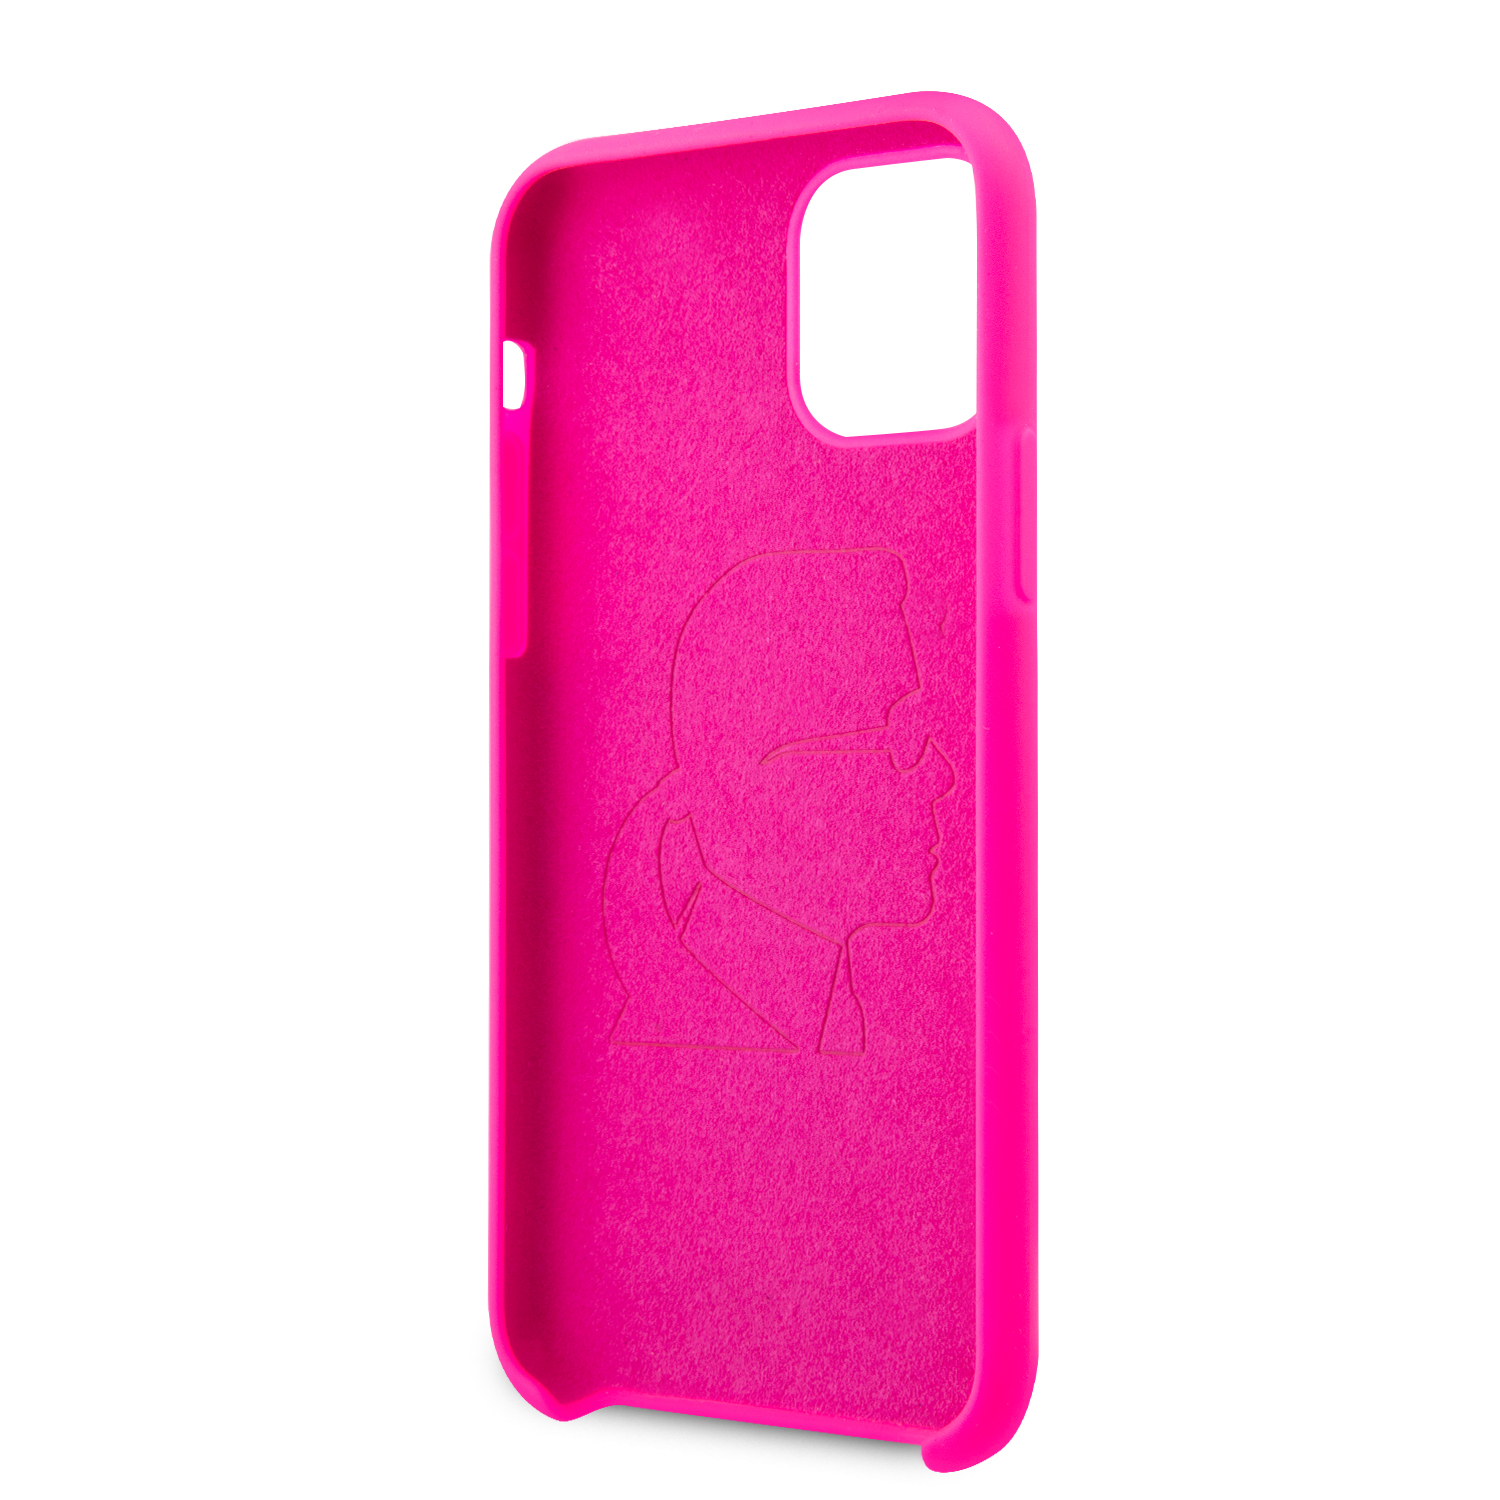 Karl Lagerfeld silikonový kryt KLHCN65SILFLPI Apple iPhone 11 Pro Max black out pink 